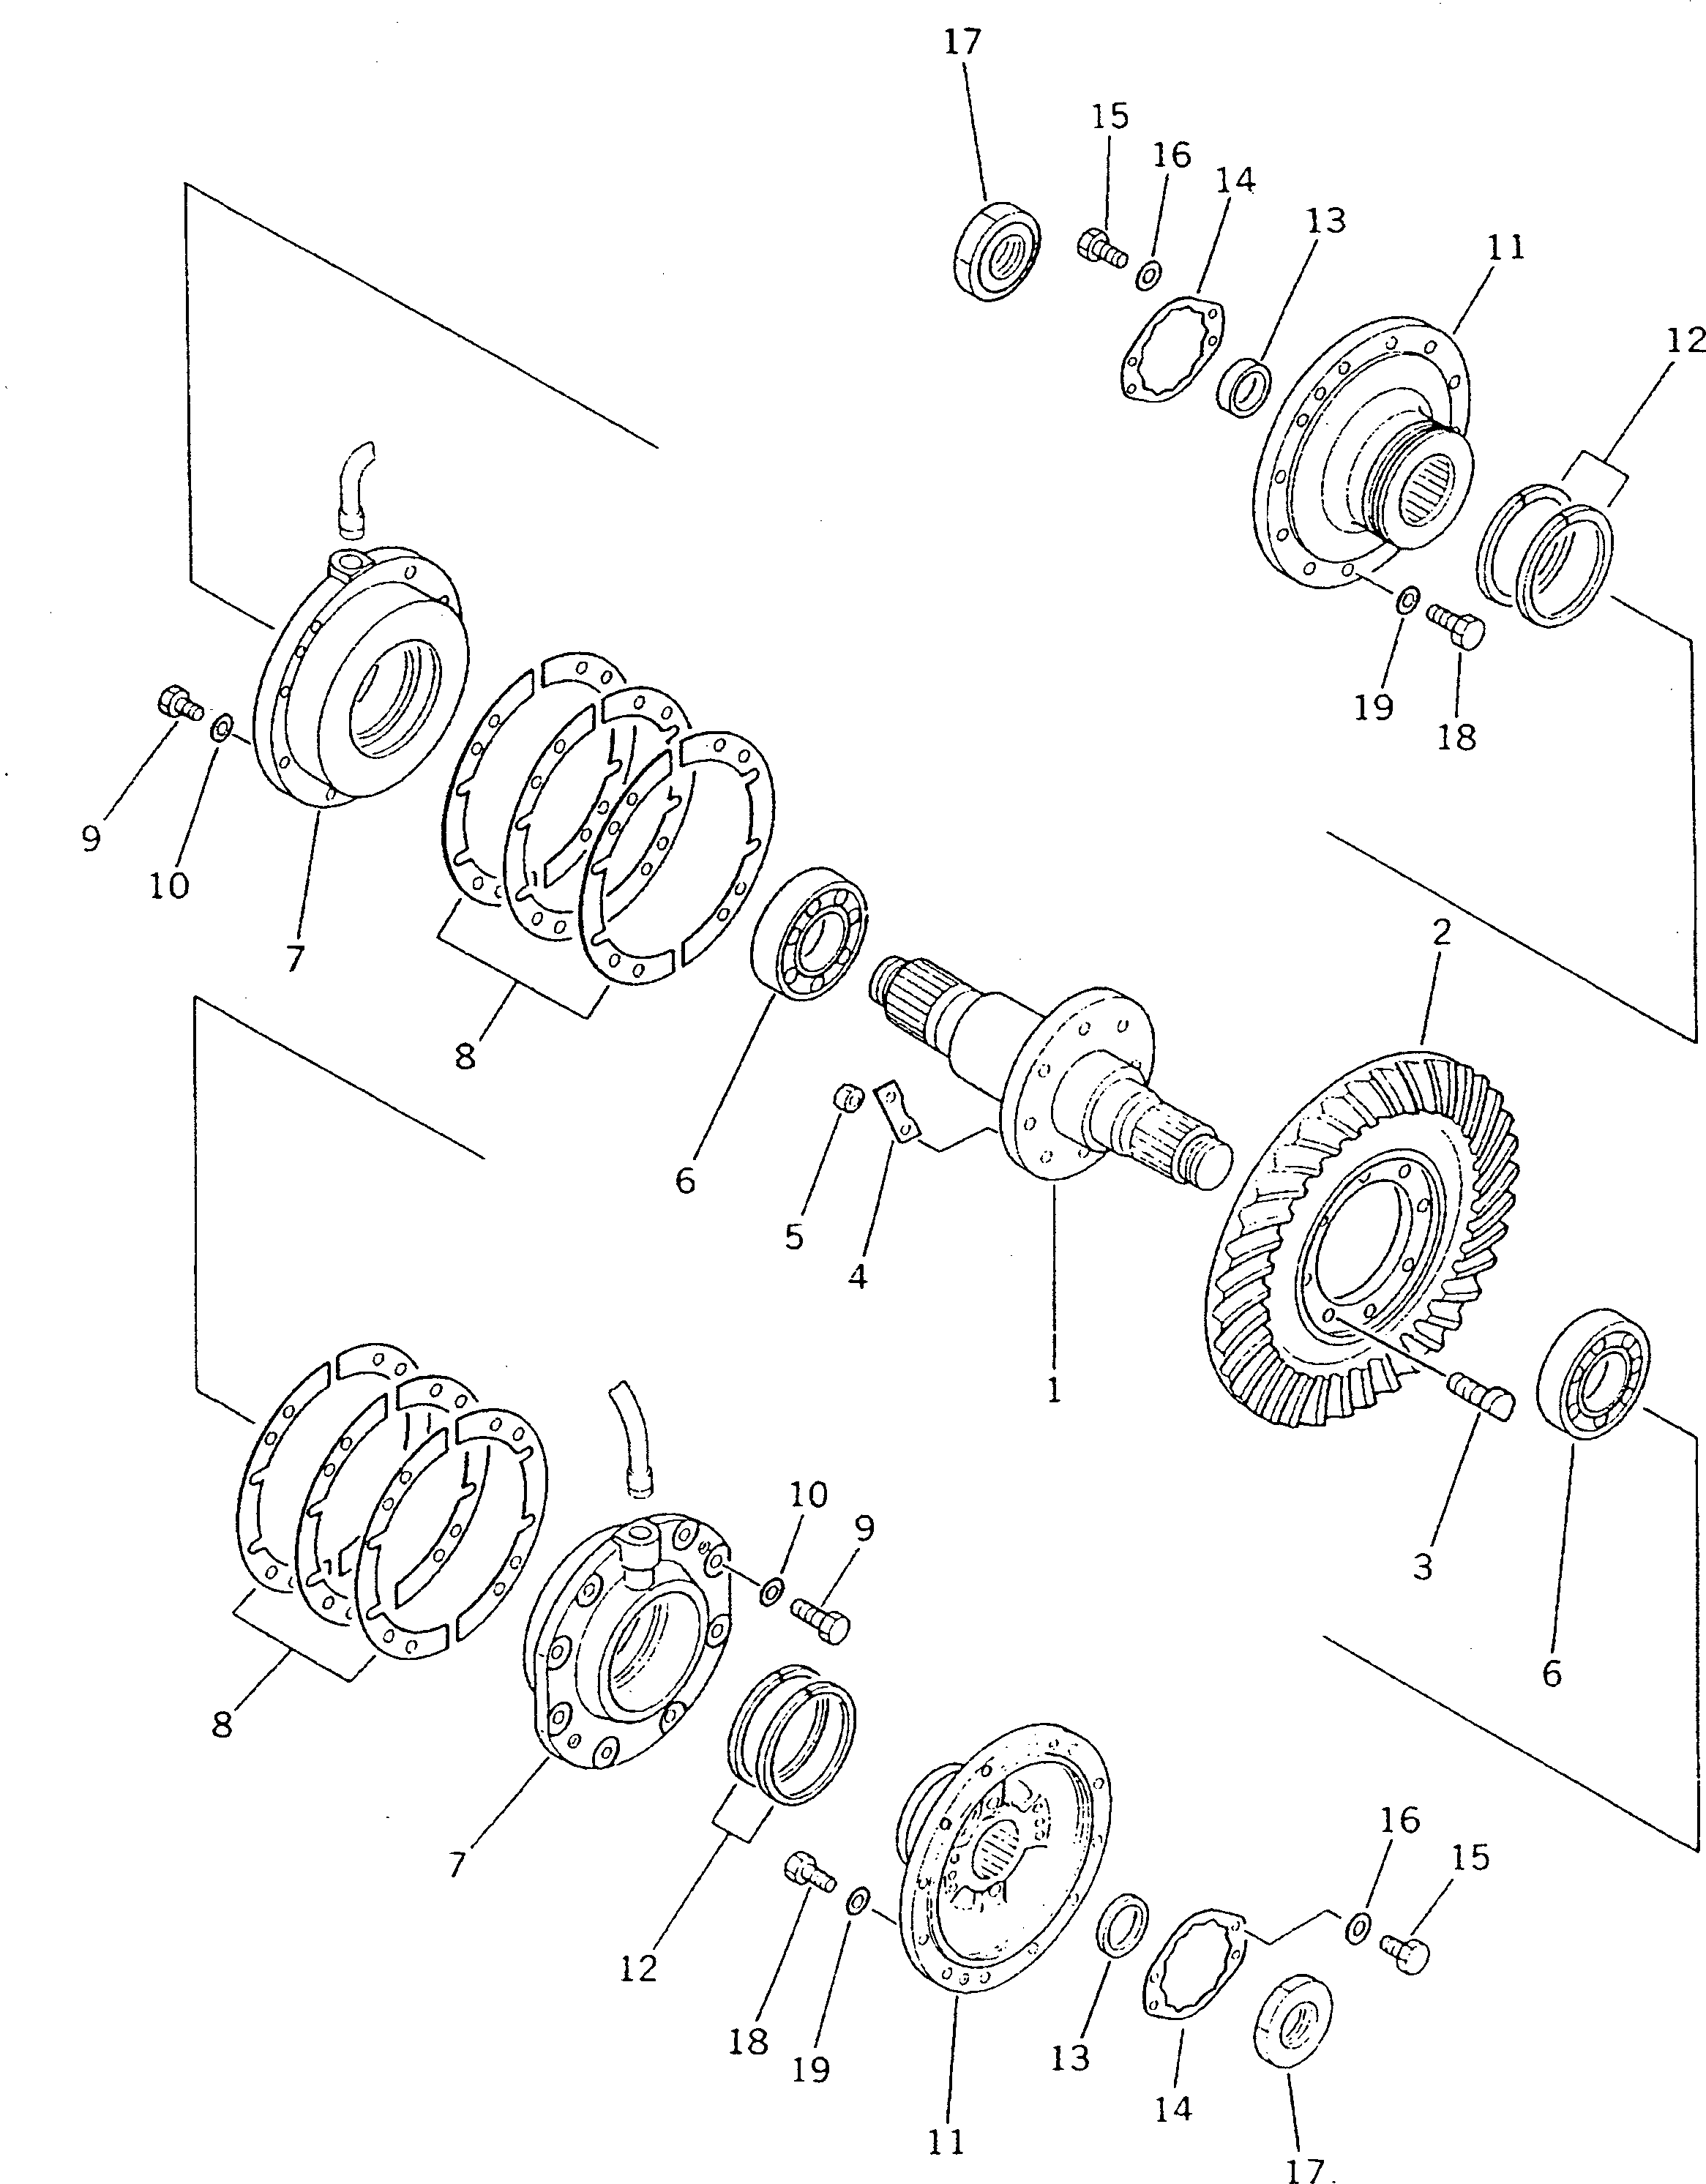 170. BEVEL GEAR AND SHAFT [2611] - Komatsu part D135A-1 S/N 10001-UP [d135a-1c]